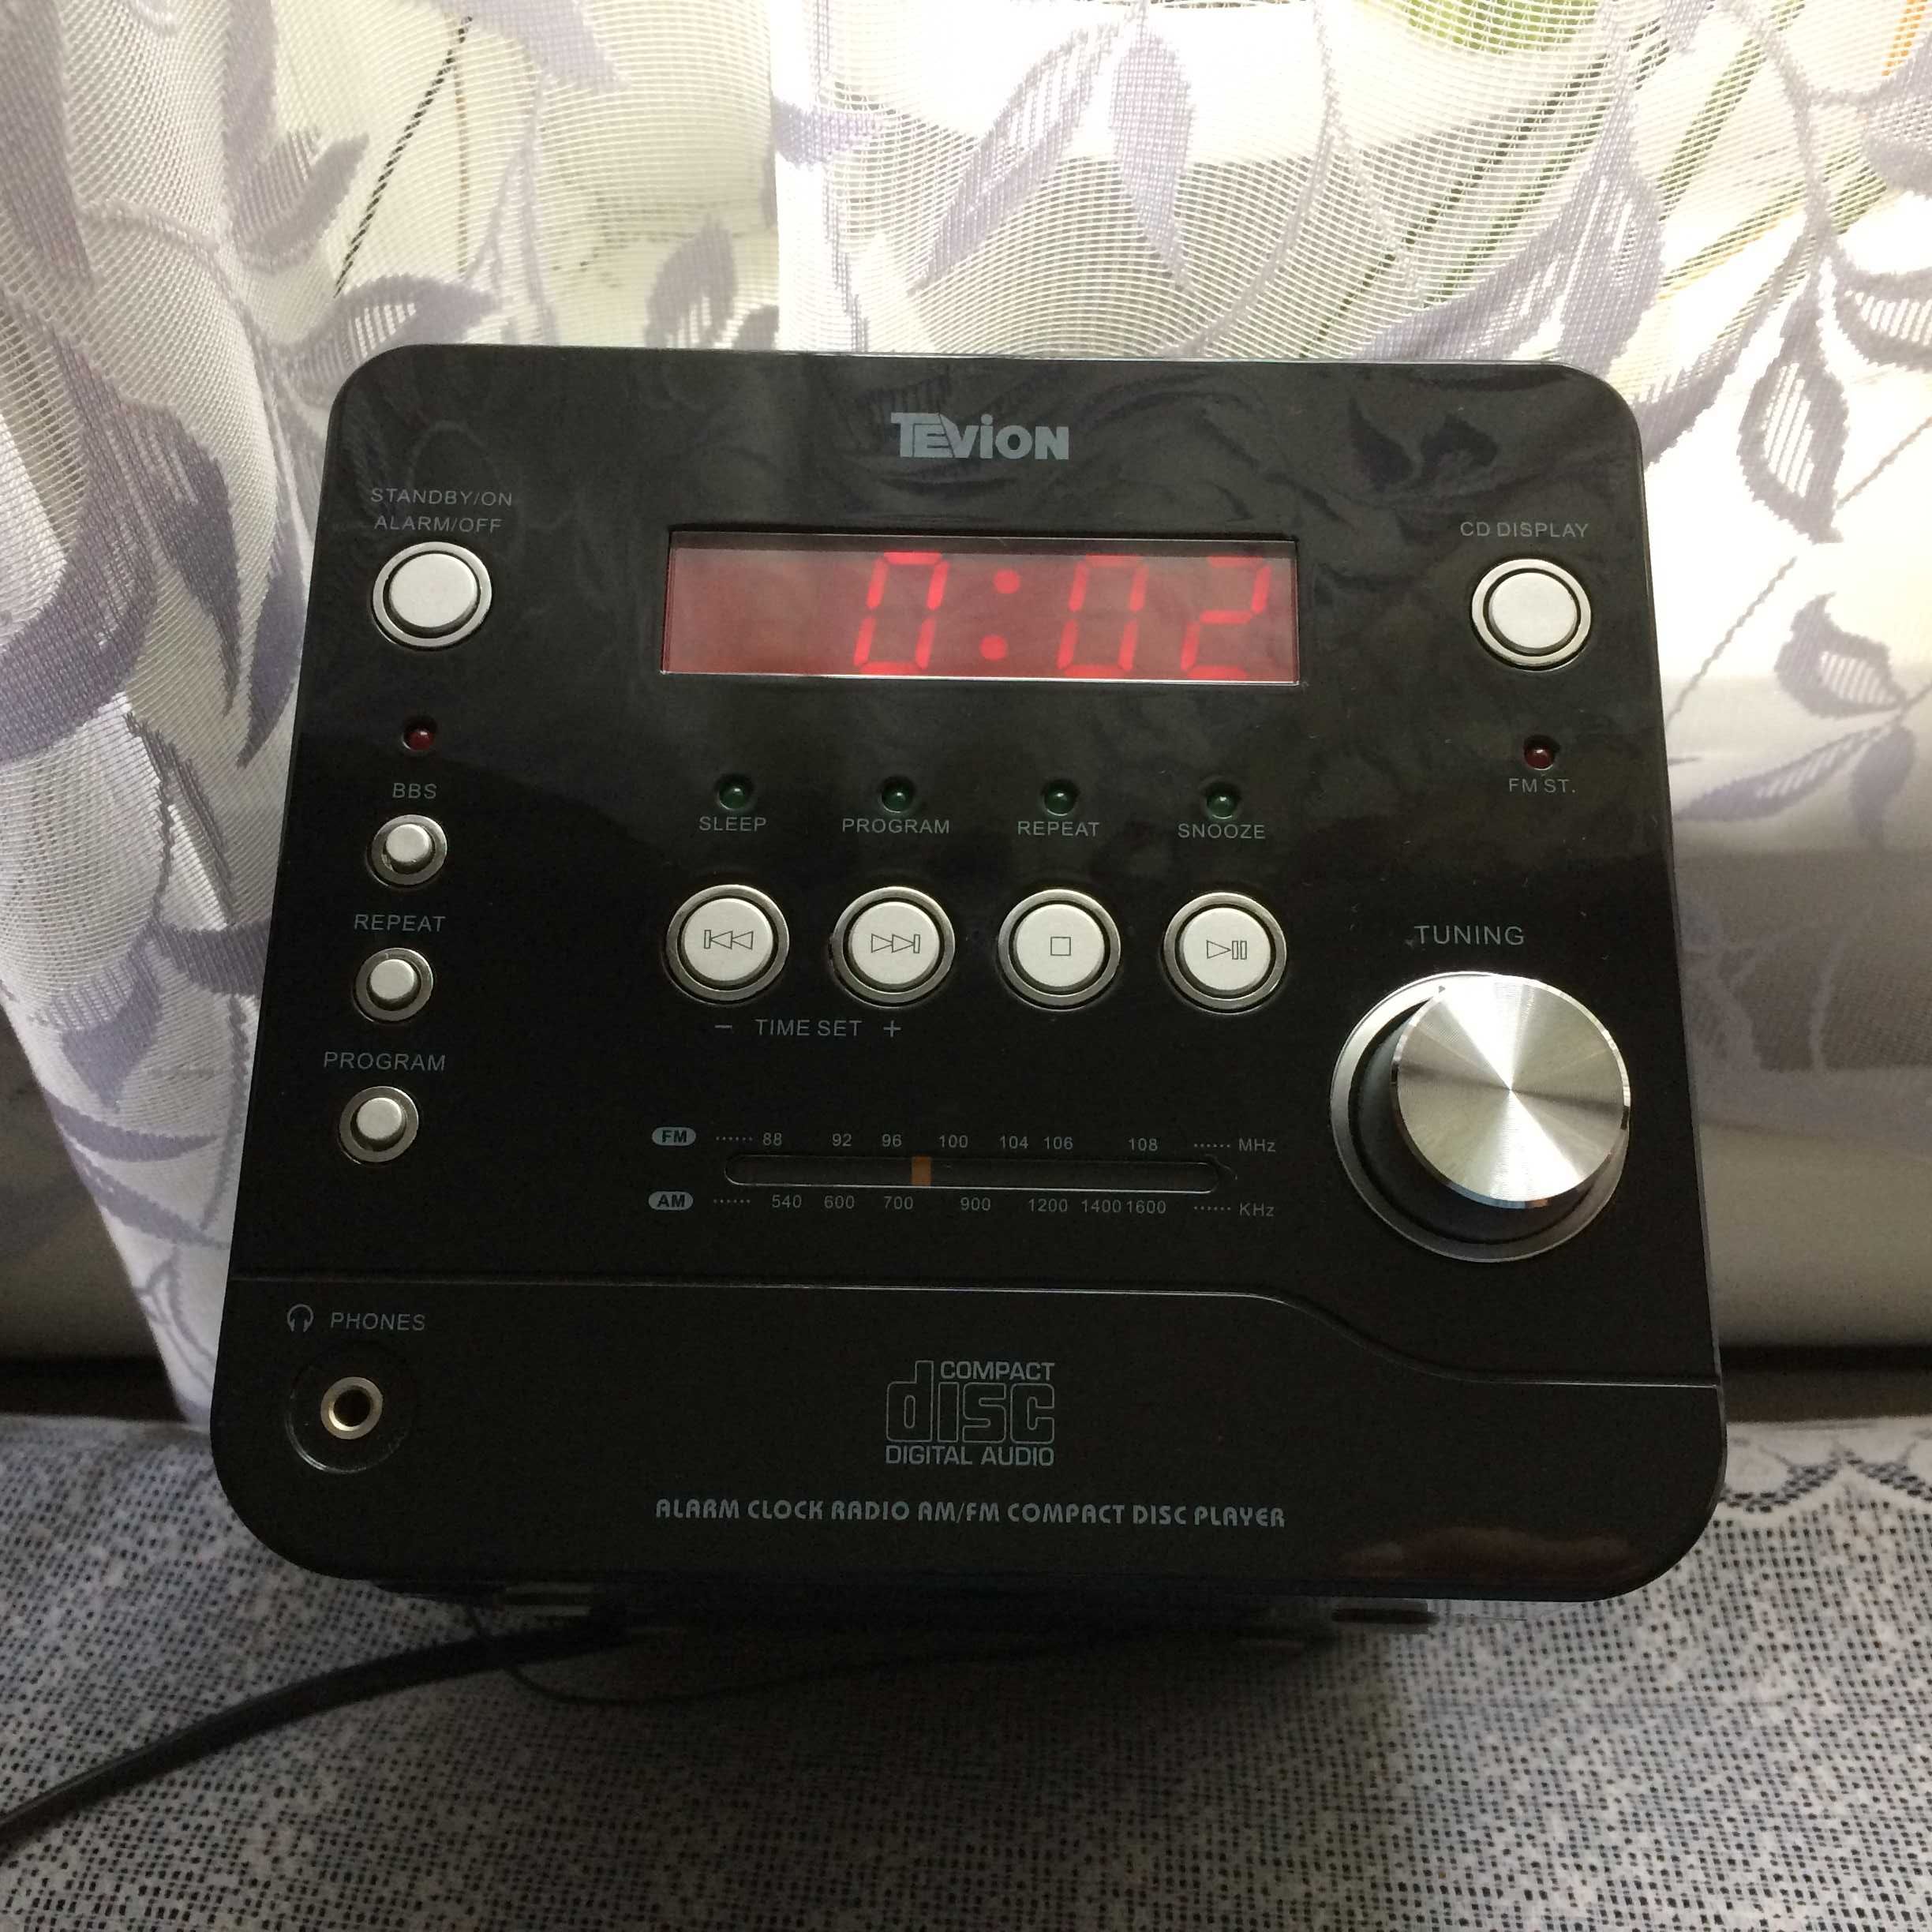 акустическая система Tevion CDR 2006 с функцией радиобудильника. Радио